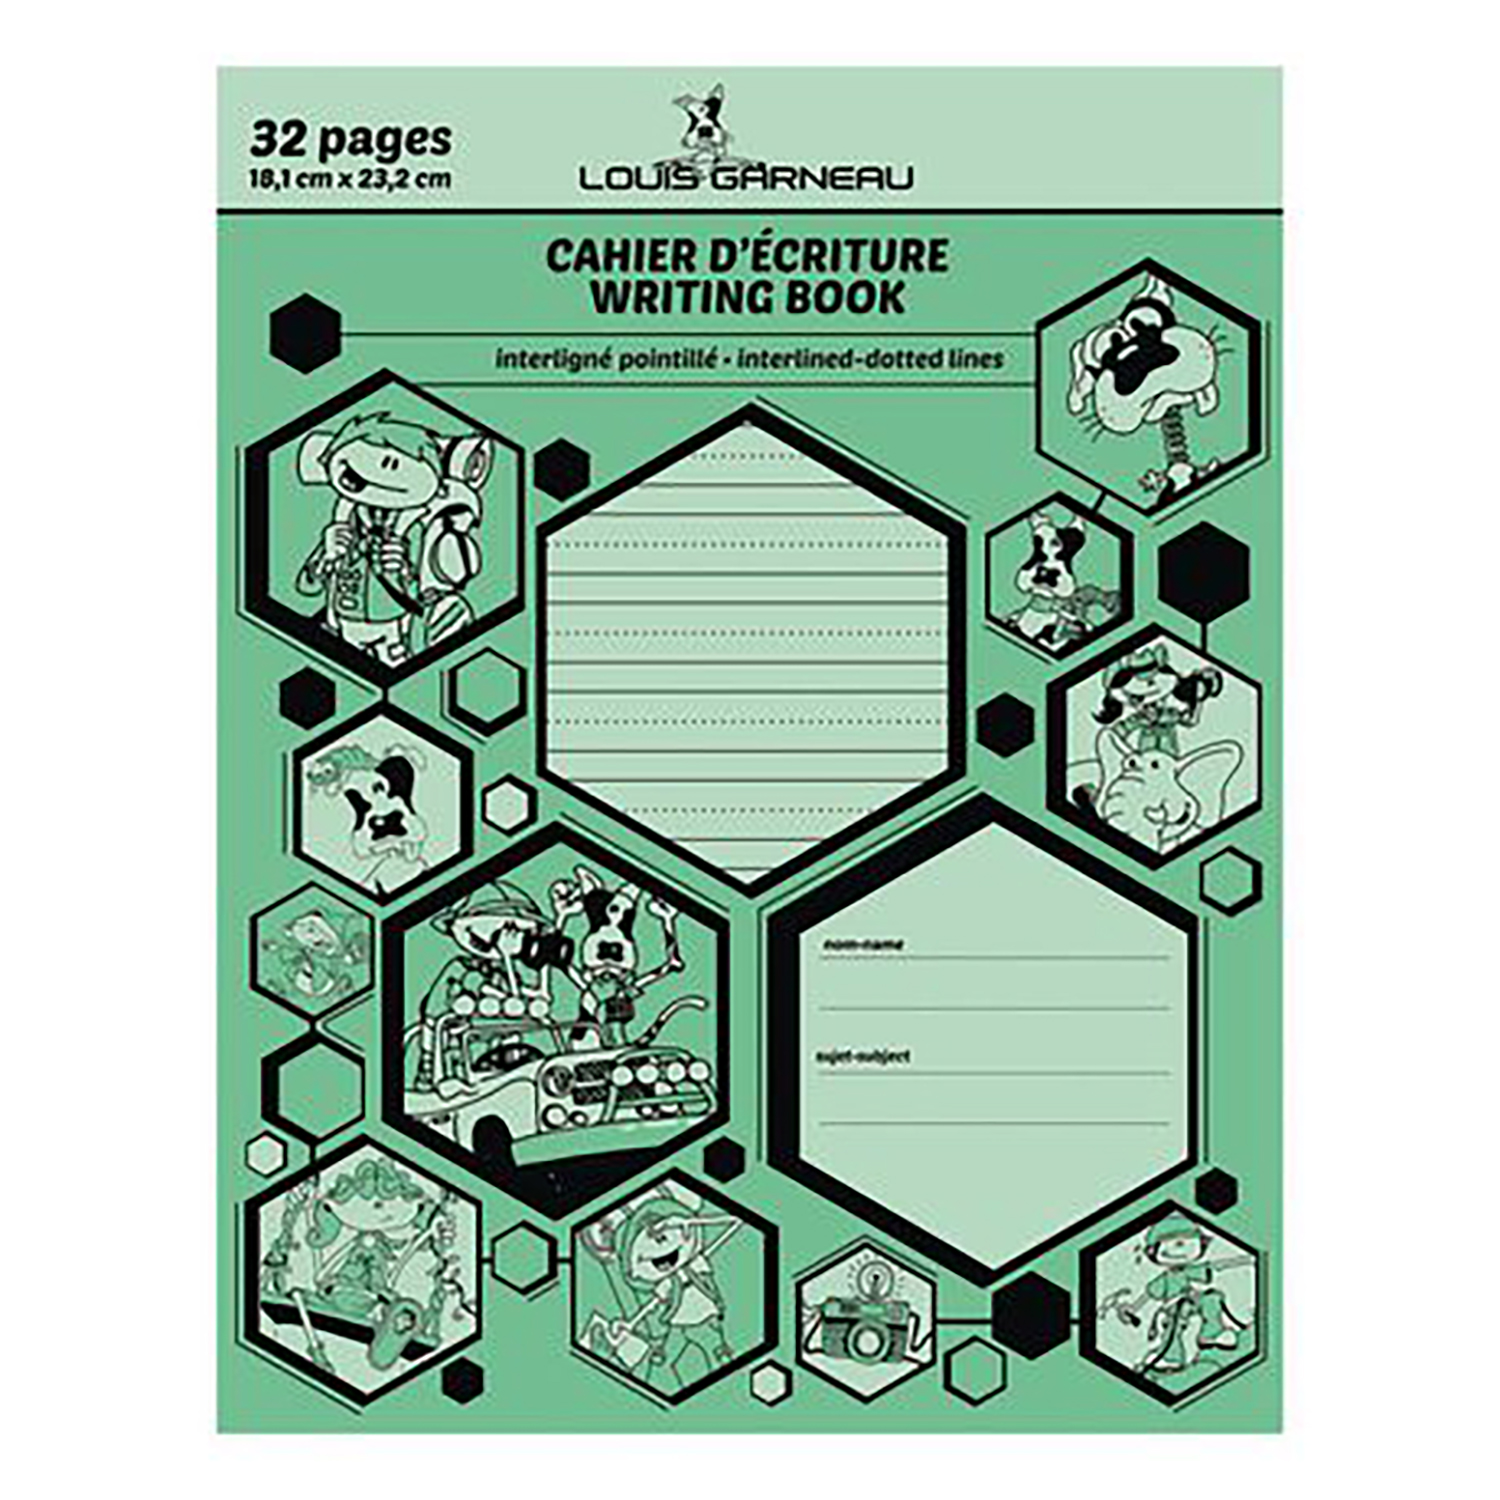  Carnet de Notes - Interligne 5 mm: Bloc-notes ligné -  espacement des lignes de 5 mm - cahier grand format (21.59 x 27.94 cm) -  120 pages. (French Edition): 9798621466282: Carnets Lignes Étroites: Books